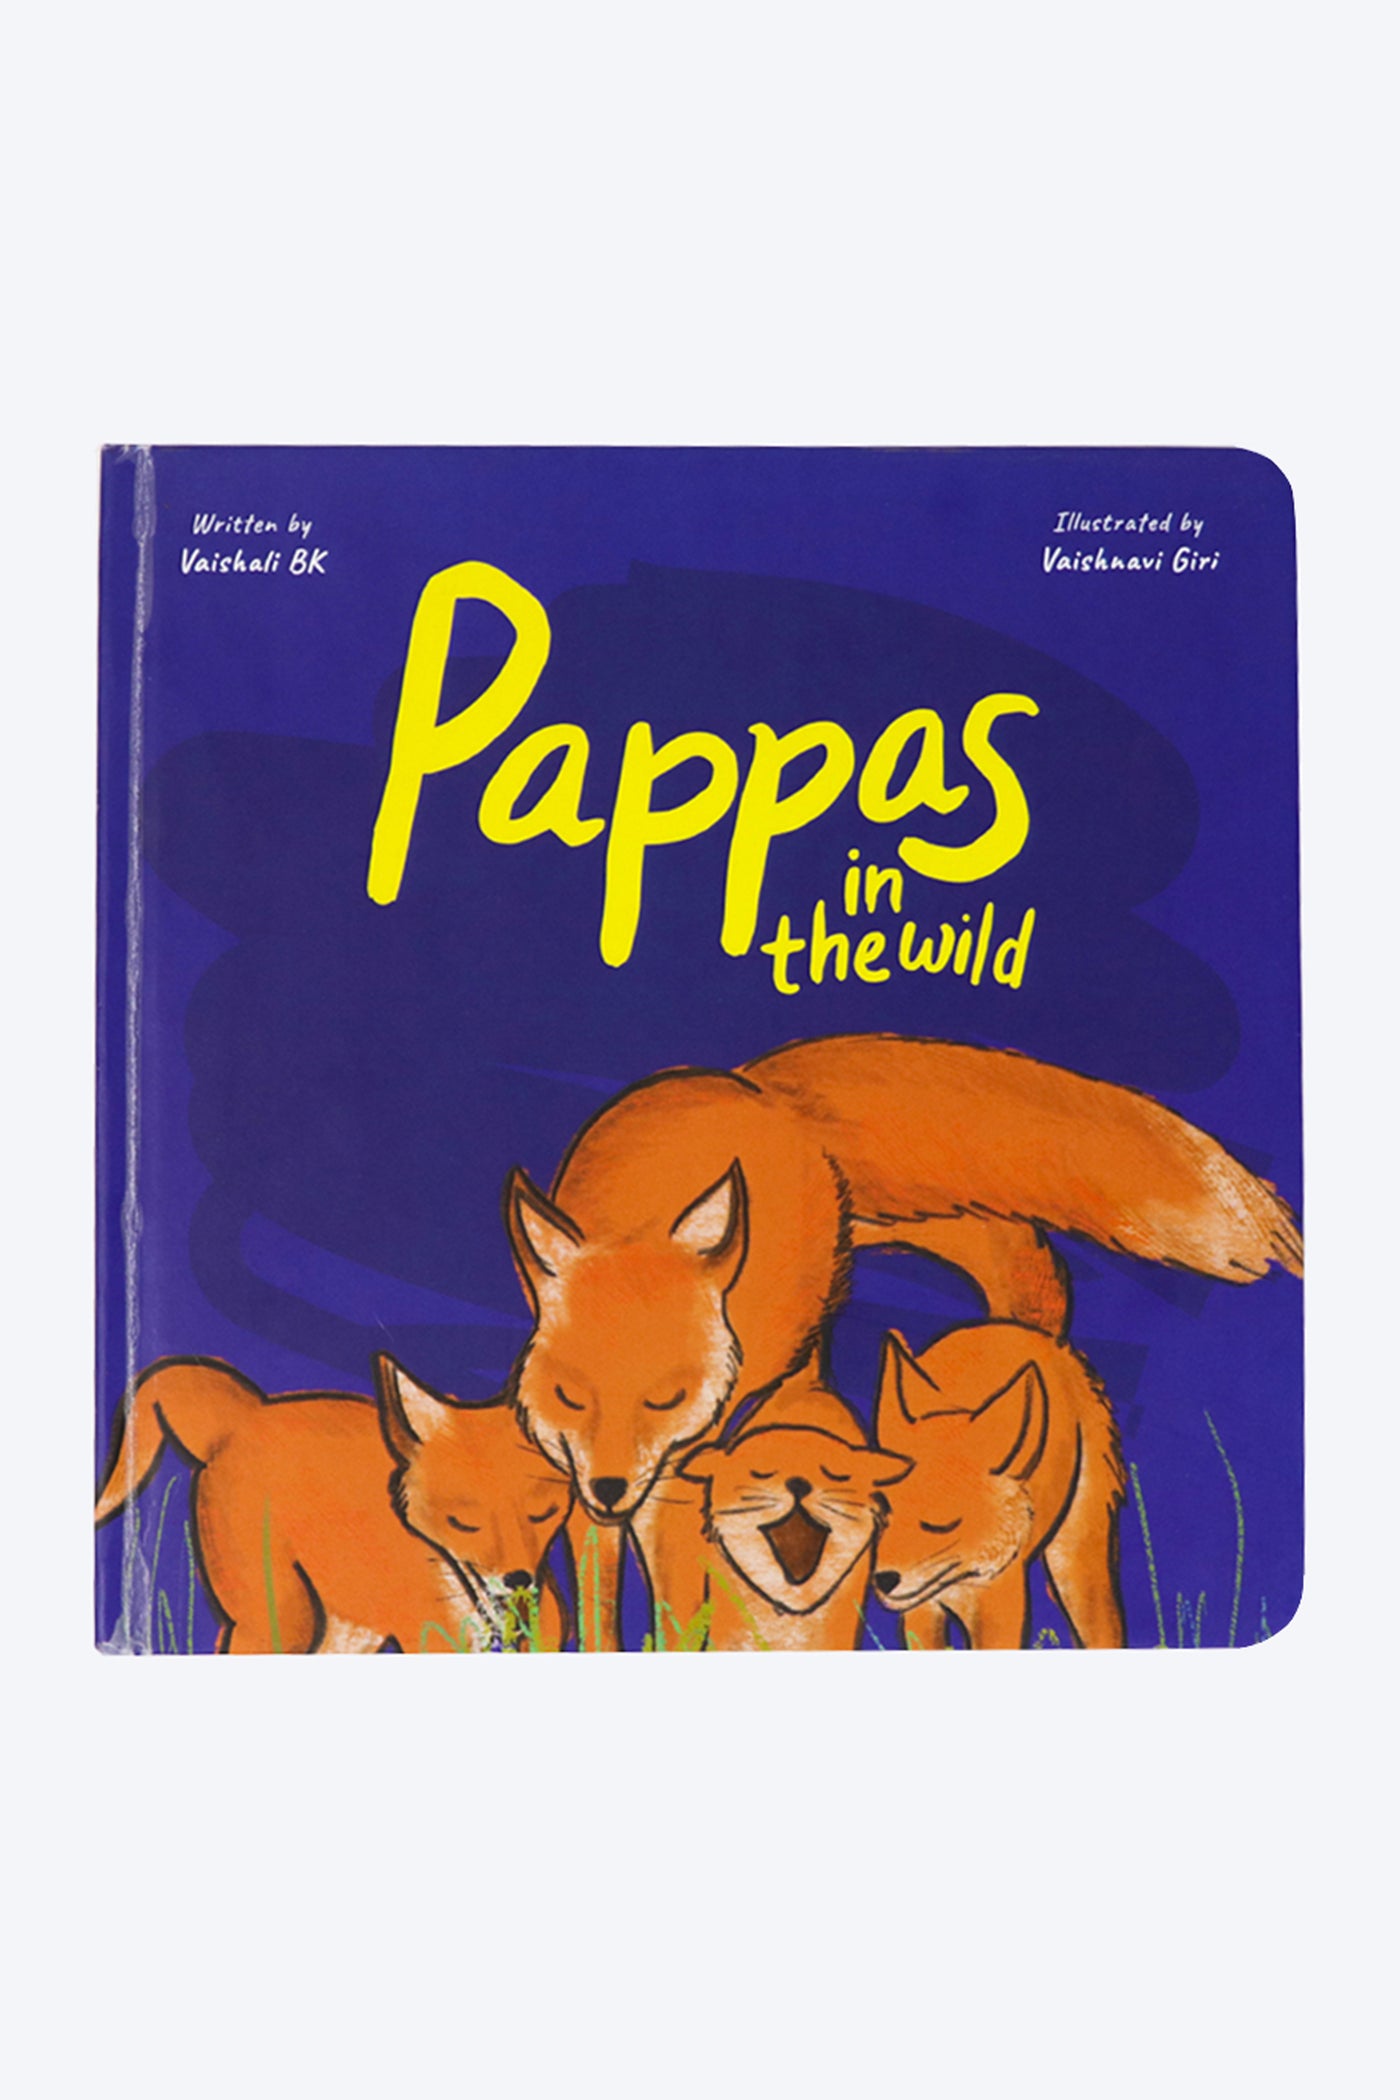 Mammas + Pappas Puzzle & Board Books Combo